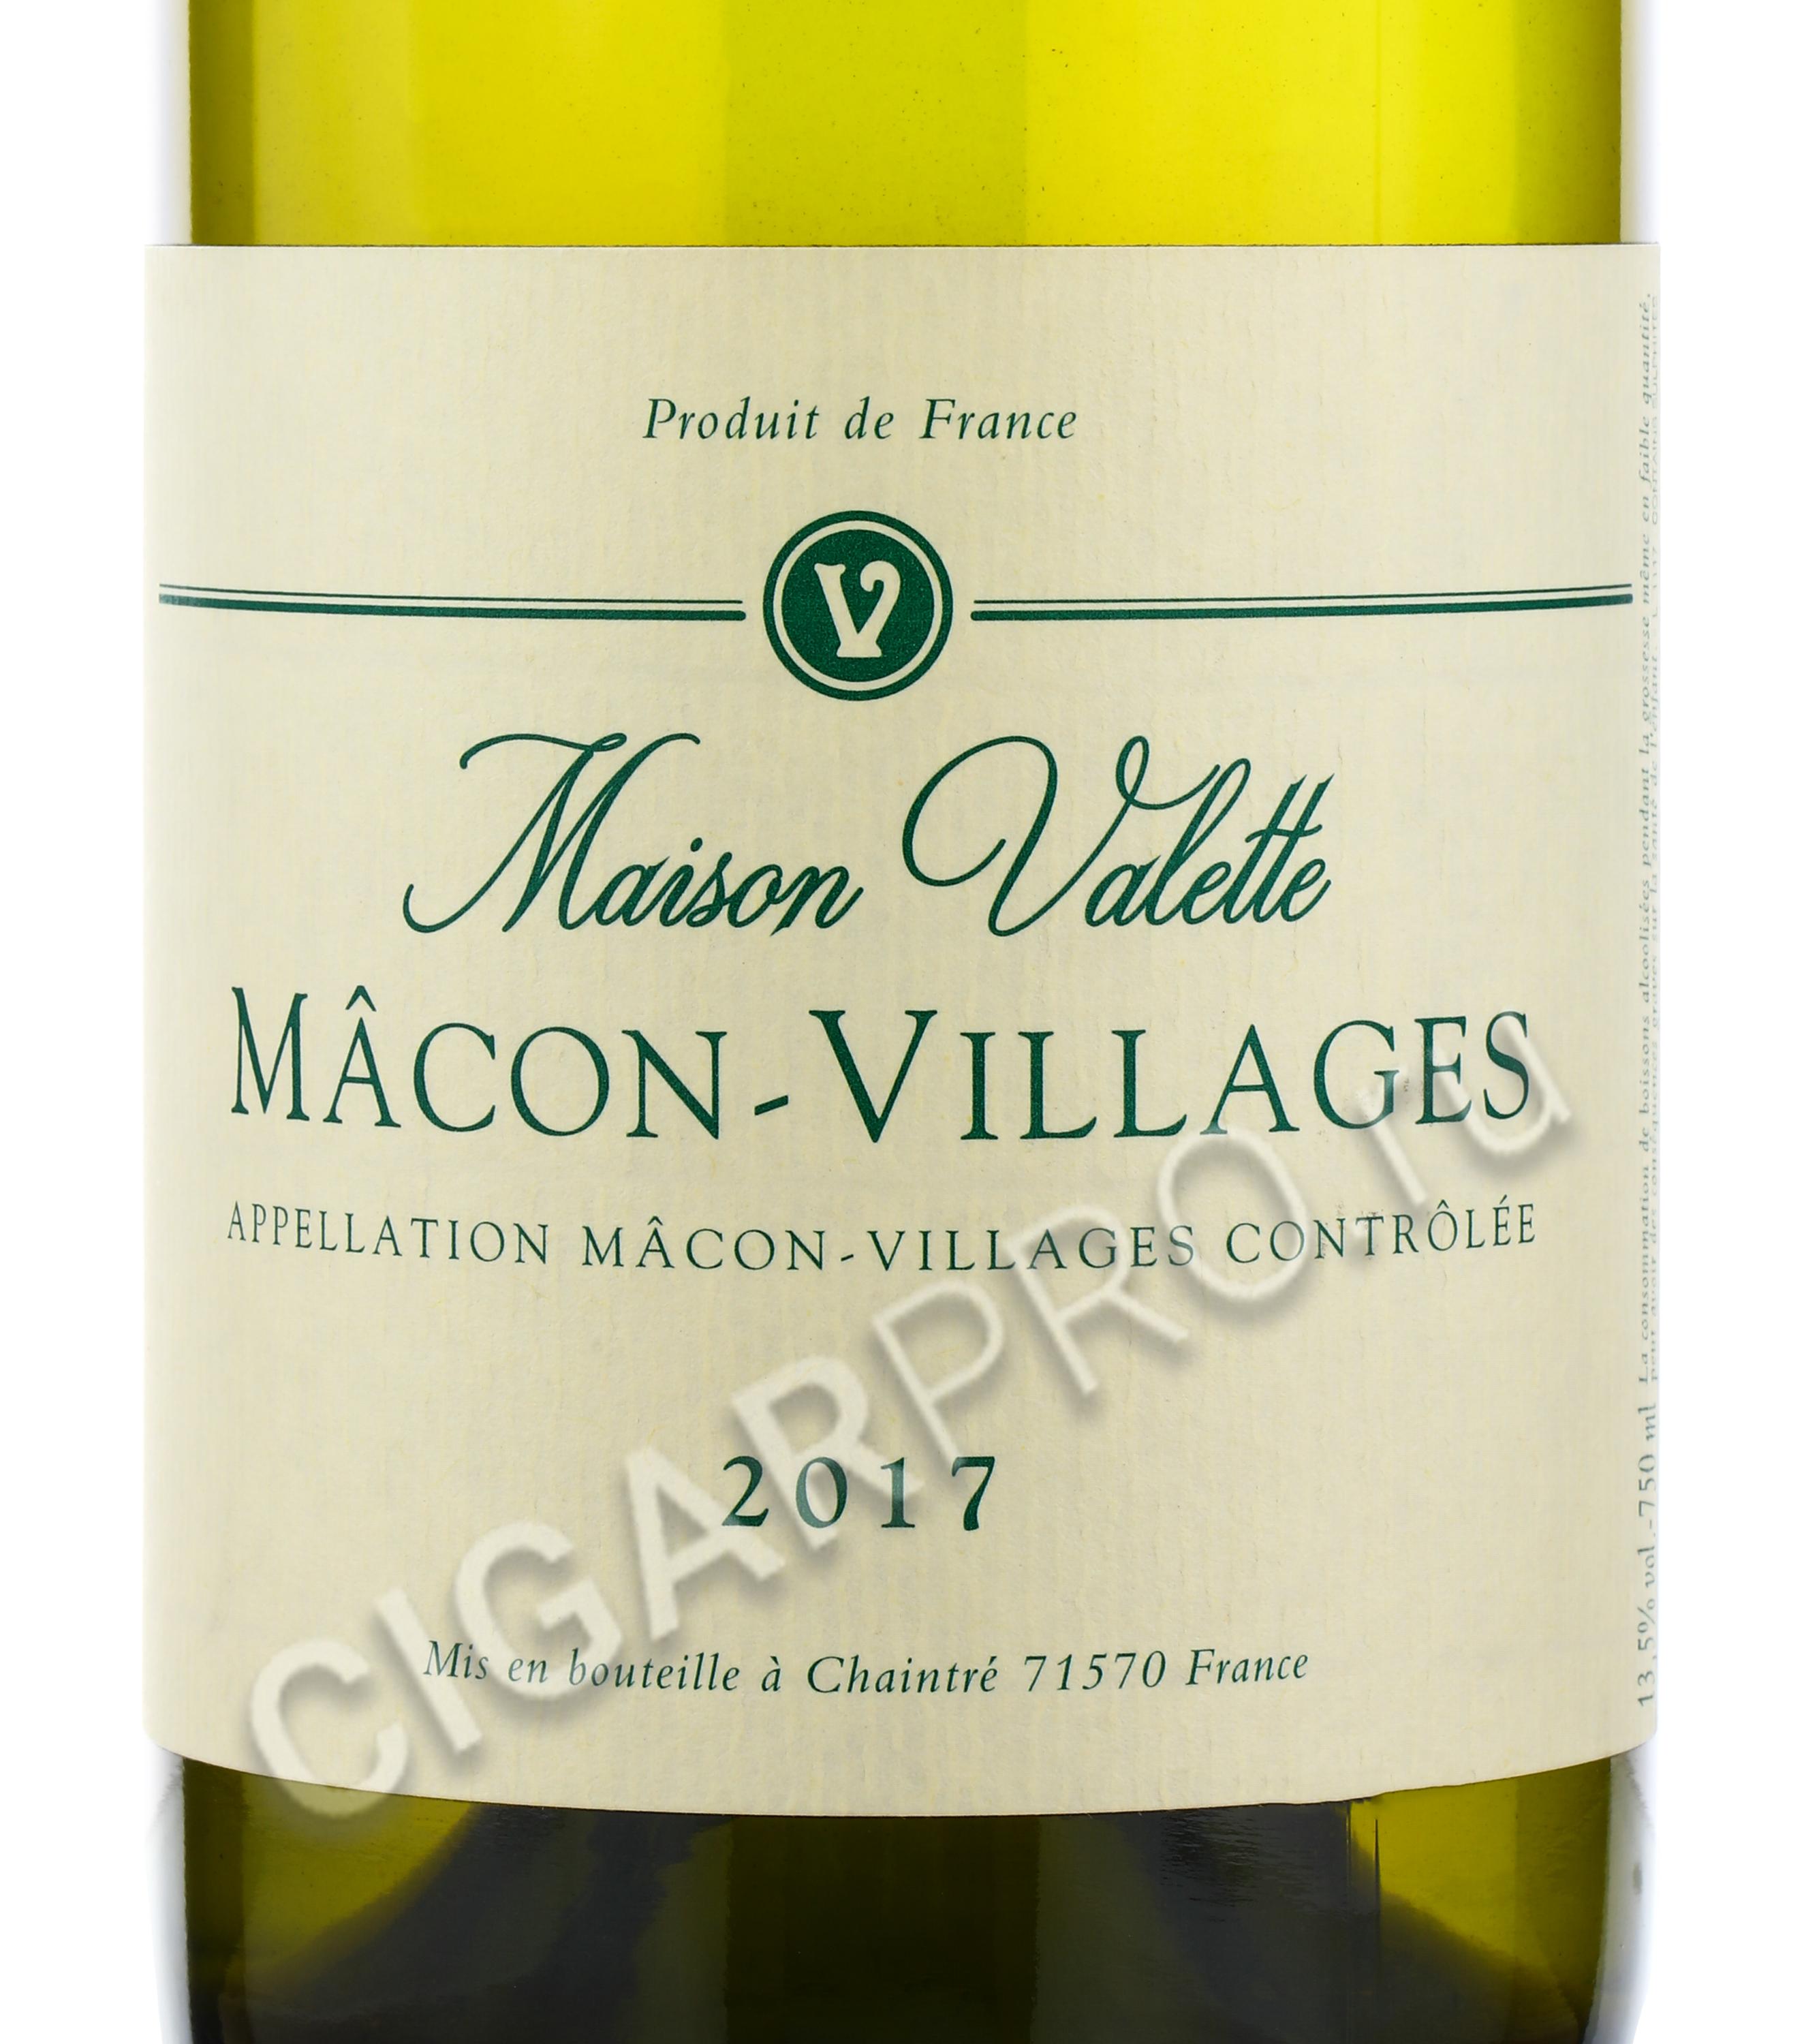 Village вино